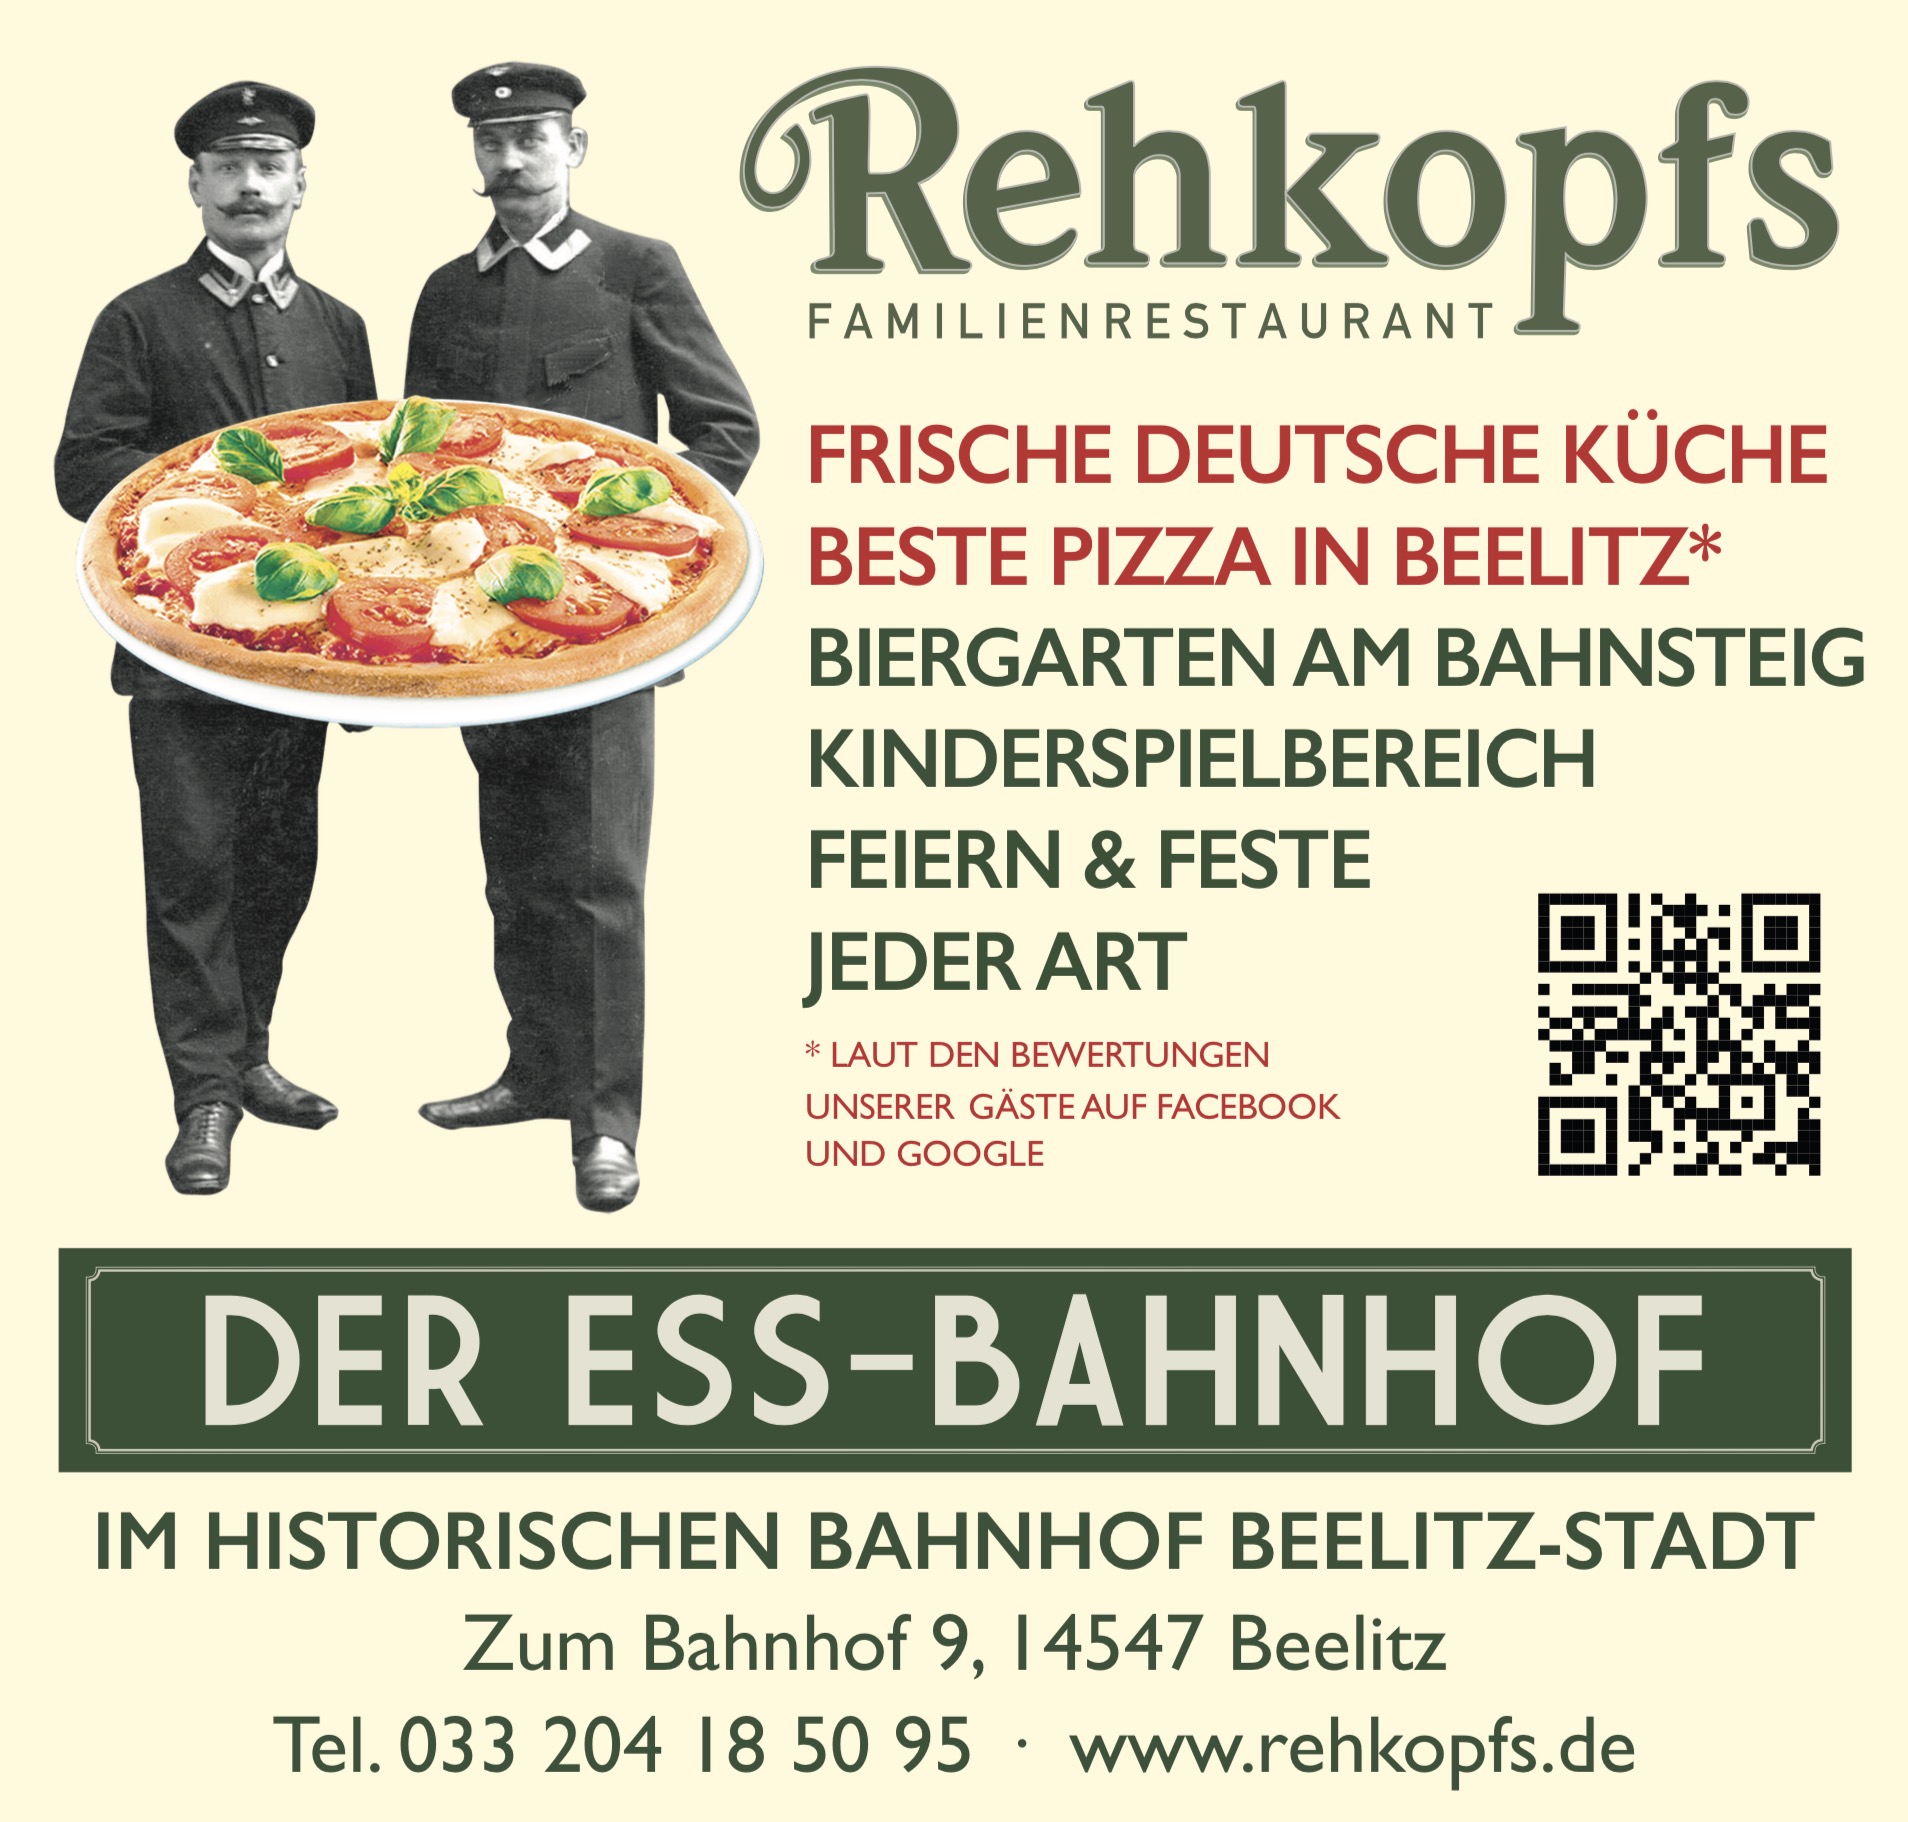 DER ESS-BAHNHOF | Rehkopfs Familienrestaurant